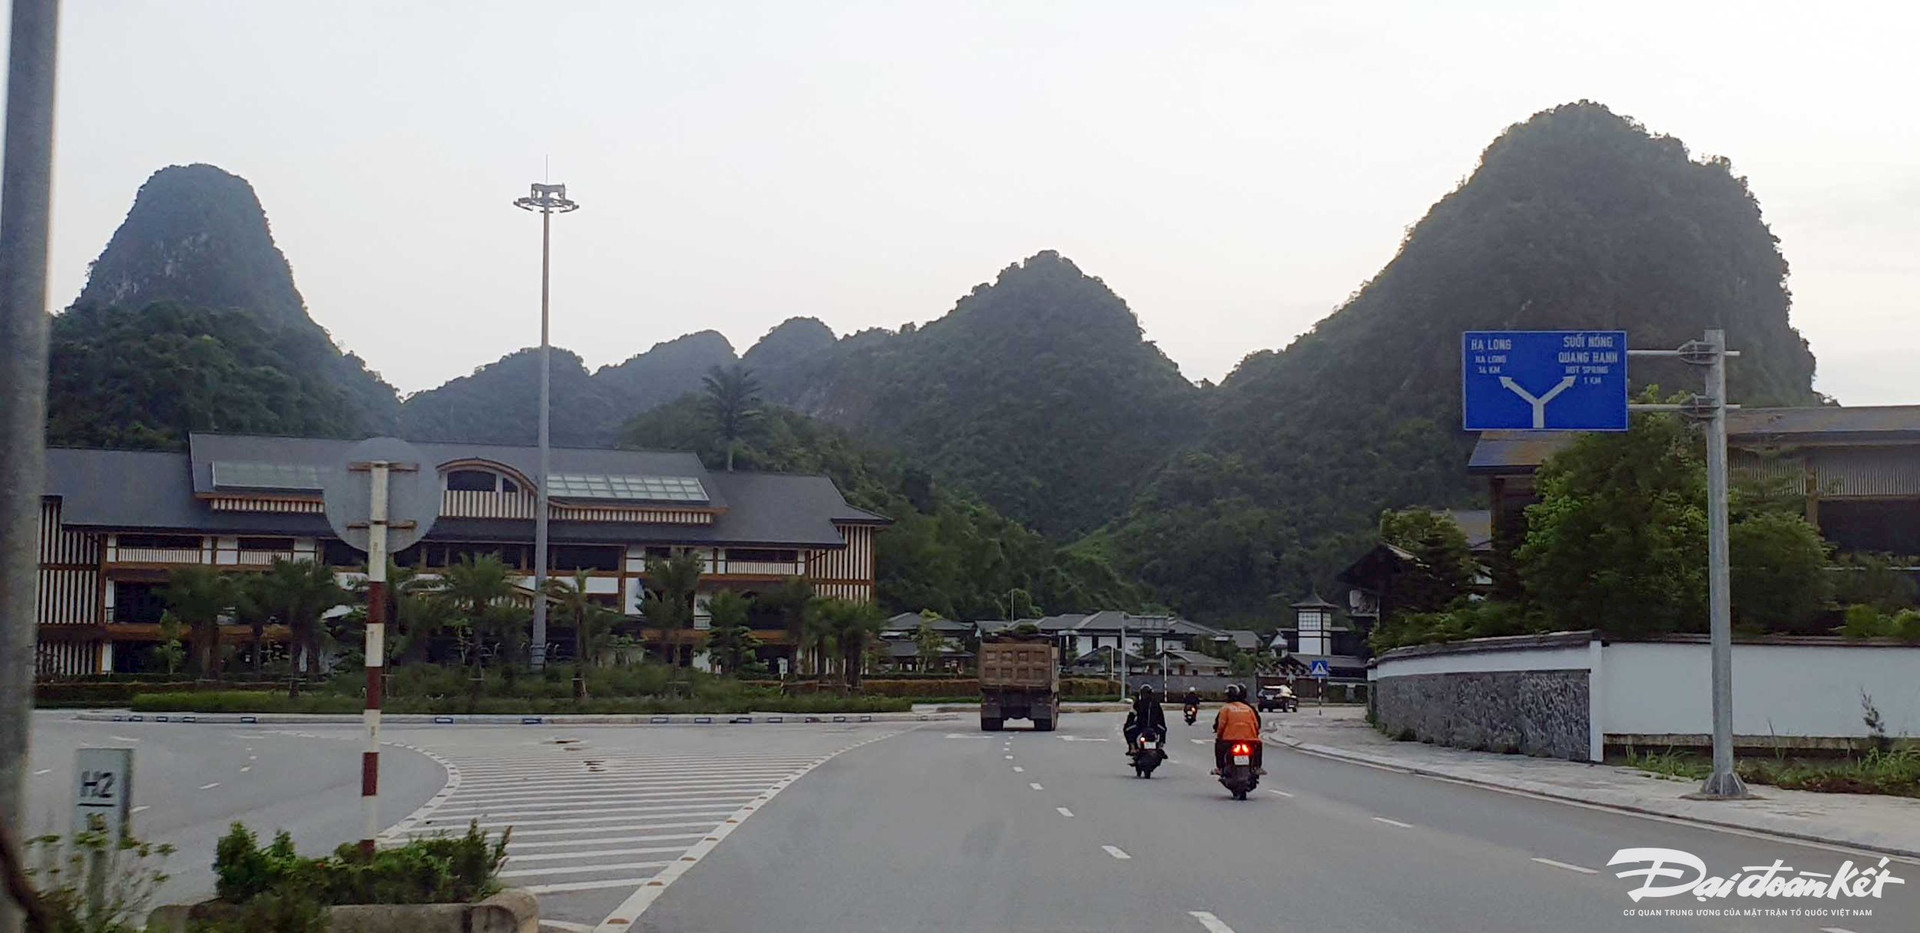 Đoàn xe tải nhập vào đường bao biển Hạ Long - Cẩm Phả tại vị trí vòng xuyến khu Yoko Onsen Quang Hanh.